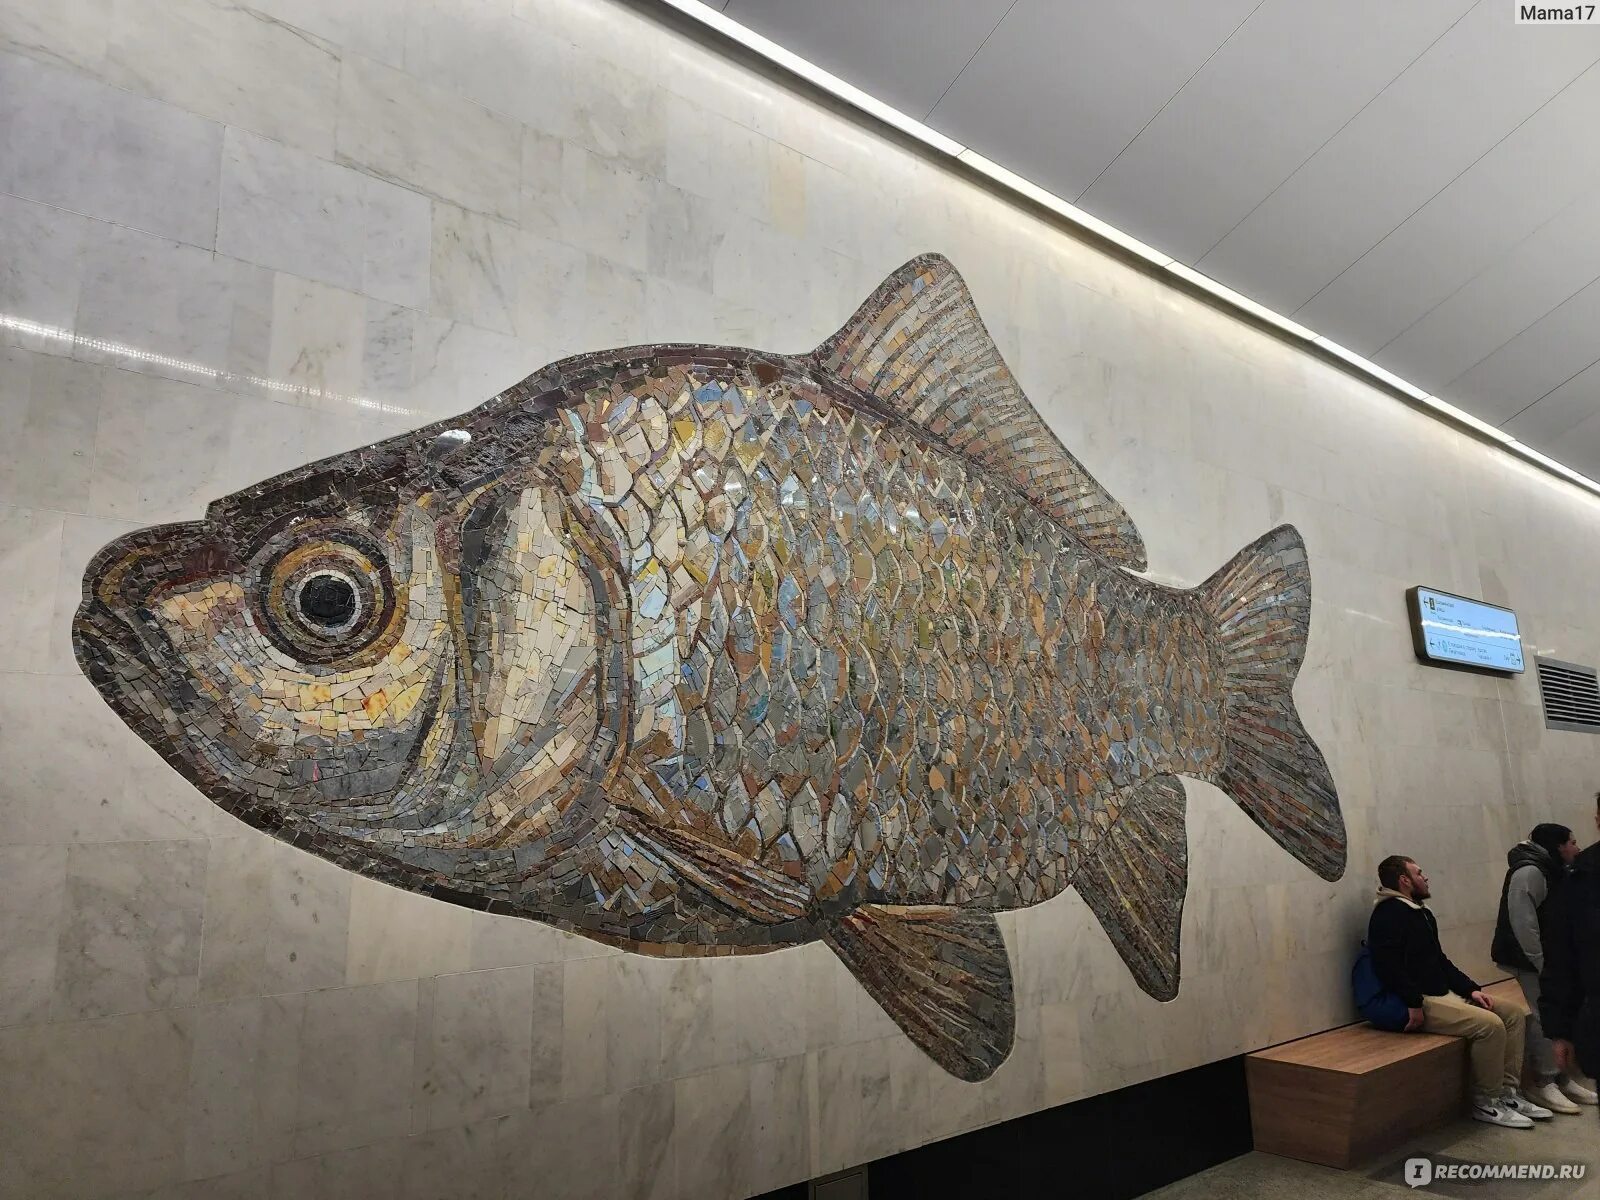 Кто кроме рыб плавает на станции бкл. Станция метро с рыбками. Станция метро с рыбами в Москве. Нагатинский Затон БКЛ рыбы. БКЛ рыбы.